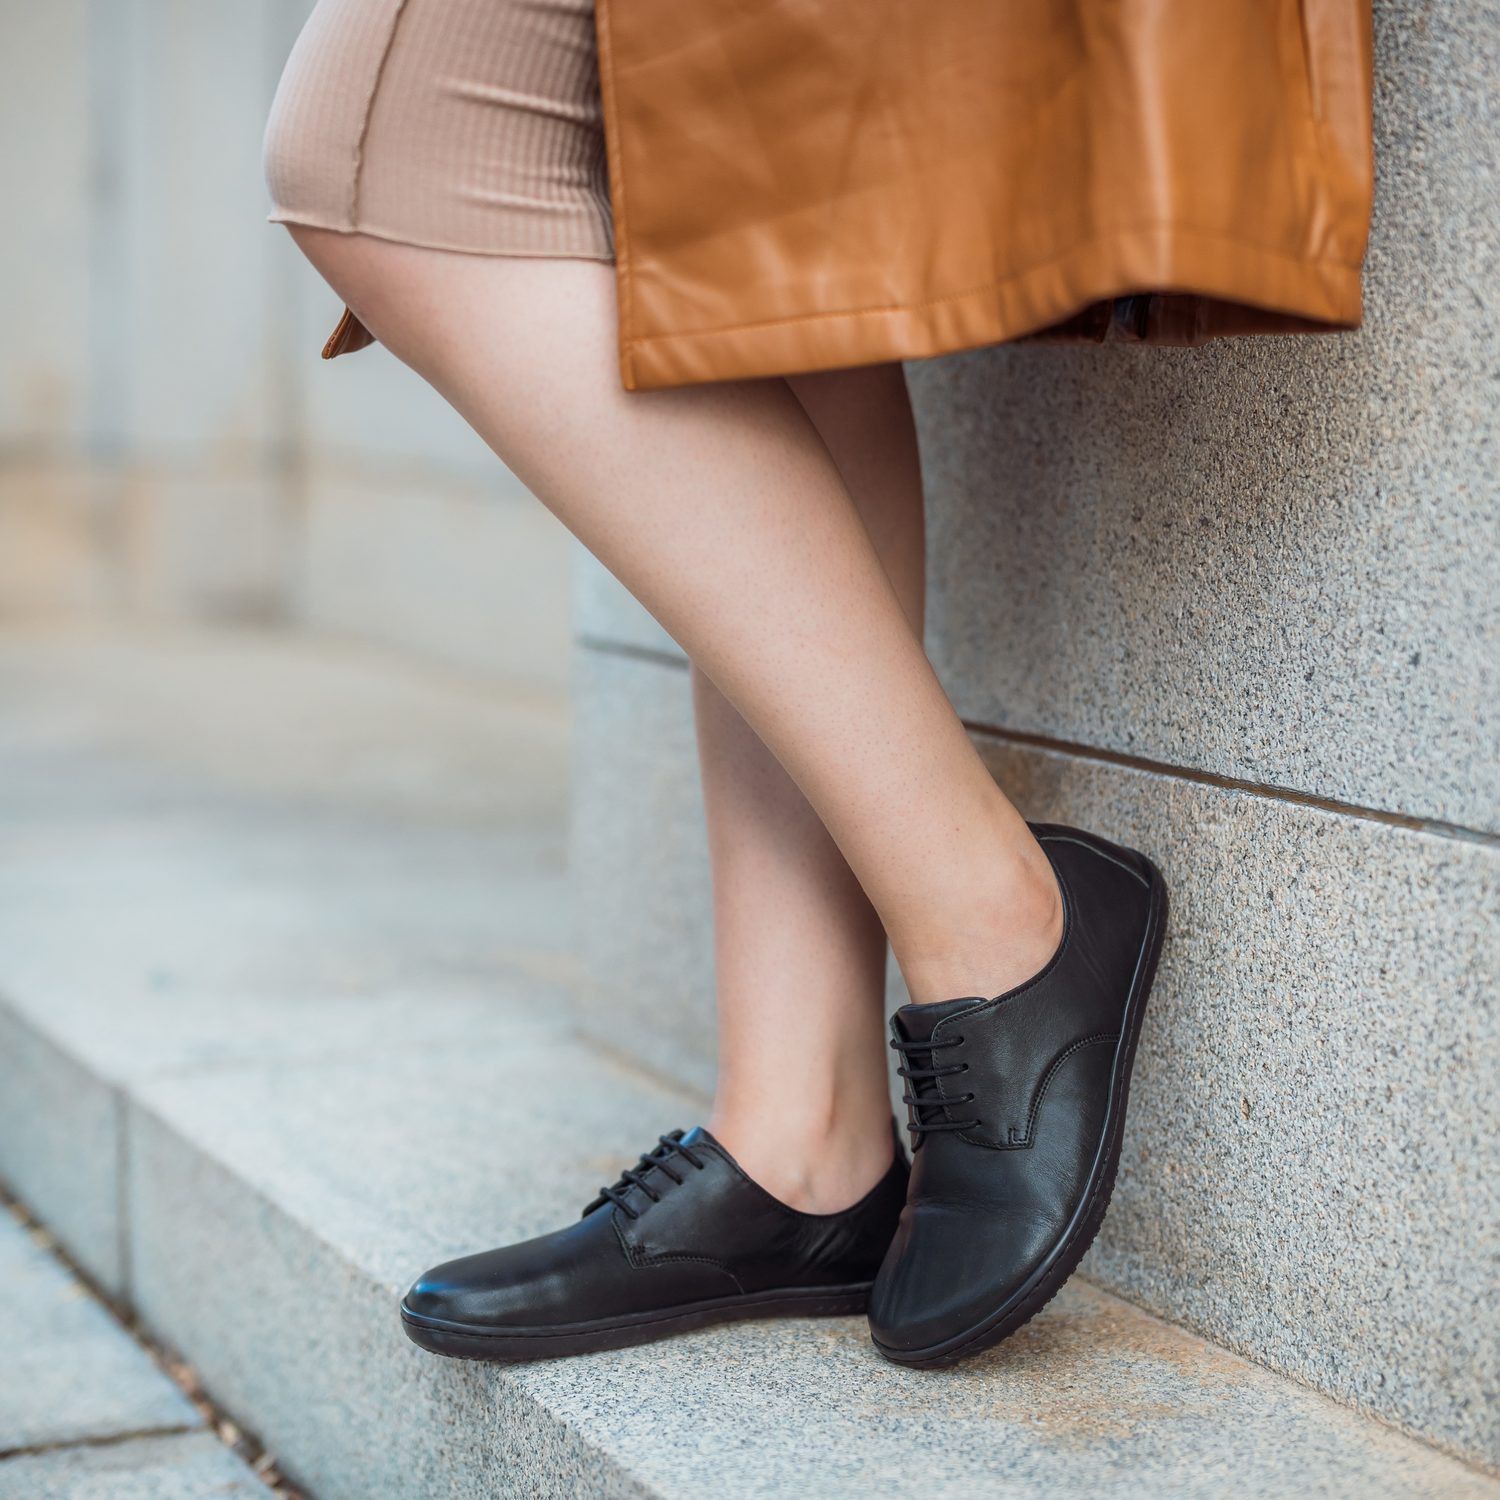 naBOSo – 6 důvodů, proč nosit barefoot boty – Zažijte pohodlí barefoot bot.